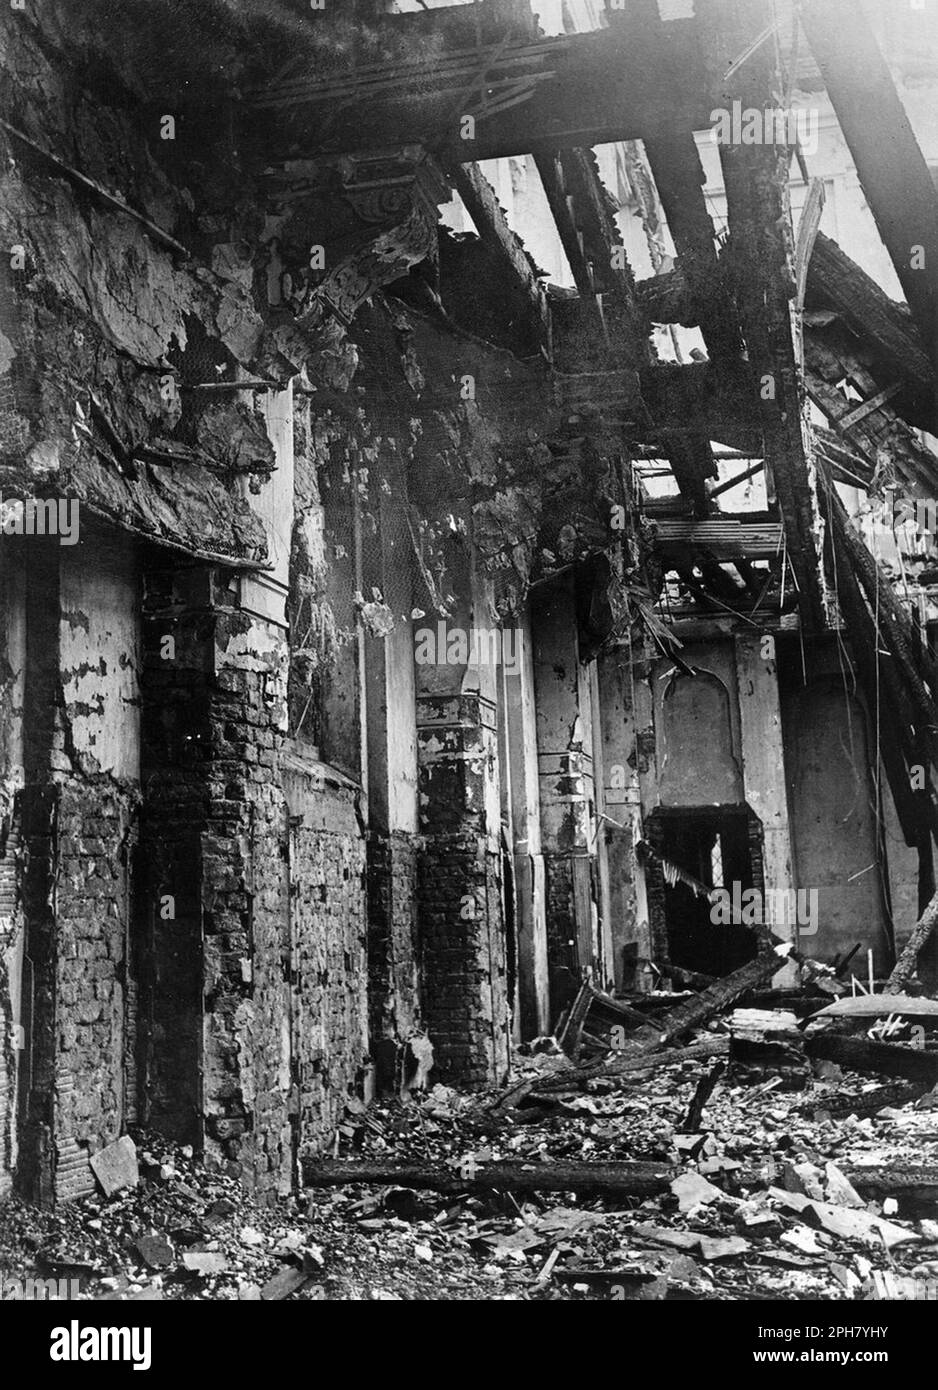 Die alte Aachener Synagoge nach ihrer Zerstörung während der Kristallnacht. Kristallnacht war ein landesweites Pogrom, das am 9. November 1938 von der nazi-Partei organisiert und durchgeführt wurde. Geschäfte und Synagogen wurden zerstört und Menschen gedemütigt und geschlagen, während die Polizei zuschaute oder sogar half. Obwohl die Schäden und die Zahl der Angreifer recht gering waren, zeigte die Tatsache, dass sie völlig unangefochten waren, den Nazis, dass sie wirklich mit den Juden anfangen konnten, und ist damit einer der wichtigsten Meilensteine auf dem Weg zum Holocaust. Stockfoto